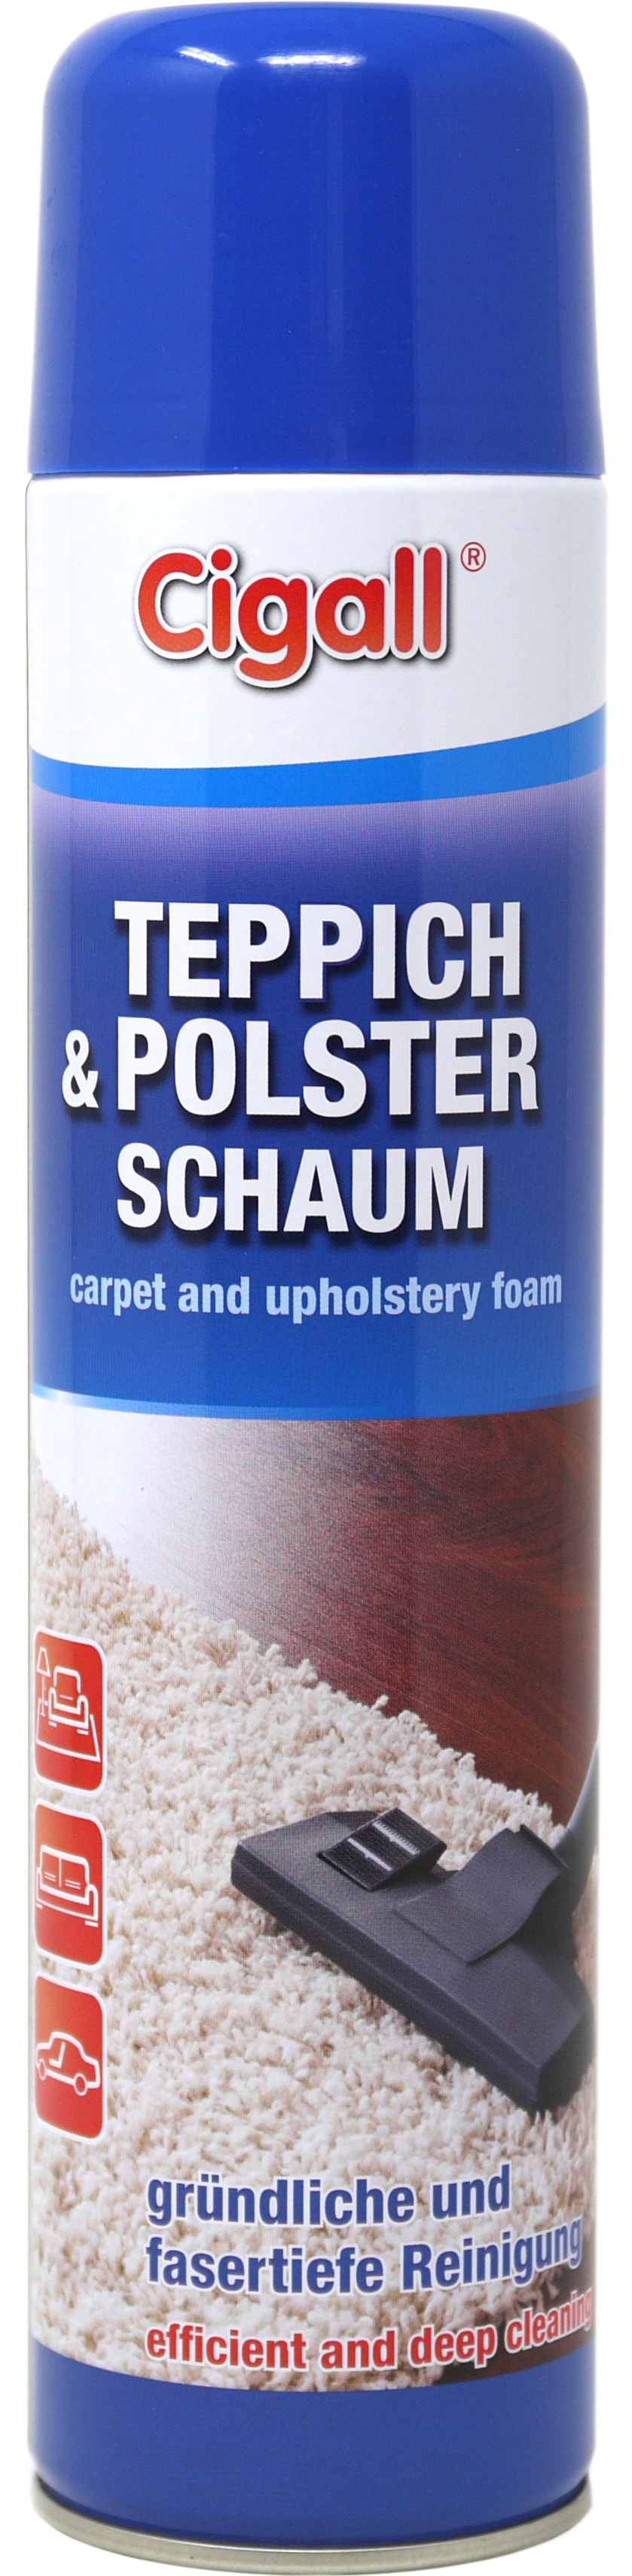 00706 - carpet cleaner foam spray 600 ml